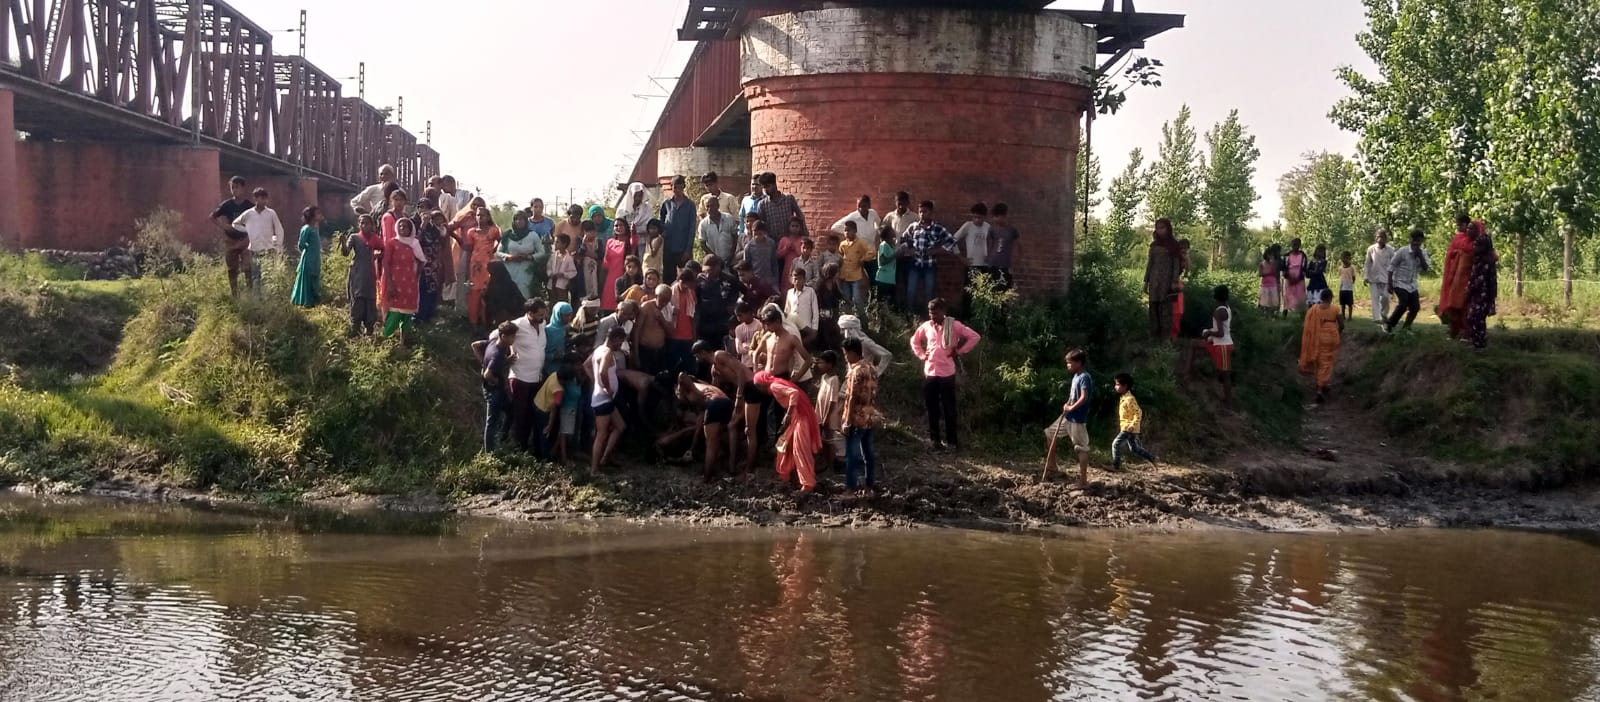 गंगा में नहाते समय 12 वर्षीय किशोर की डूबने से मौत,परिजनों में मचा कोहराम 